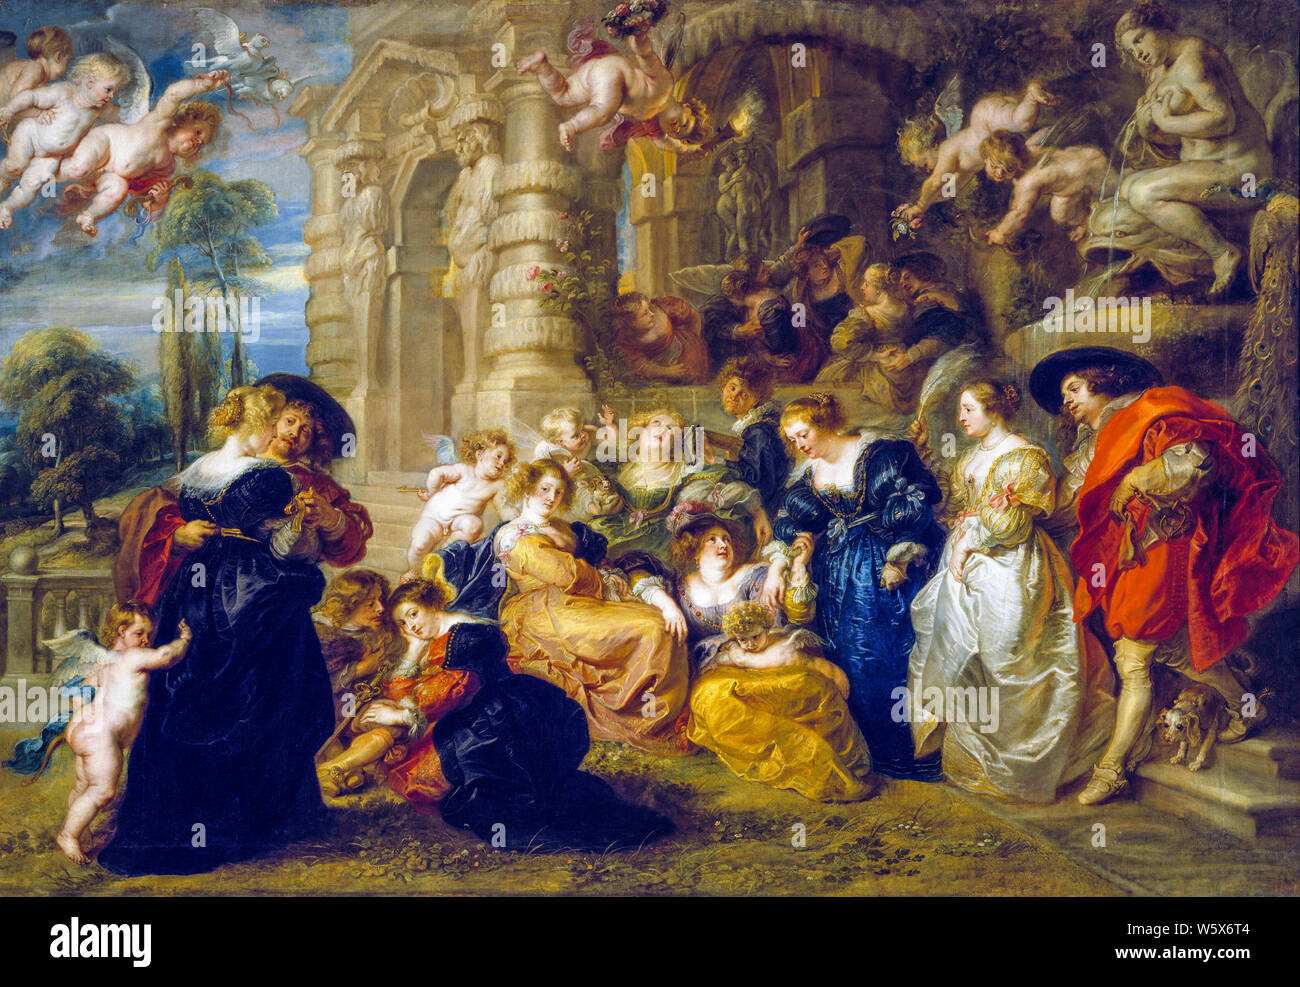 Peter Paul Rubens, la peinture, le jardin de l'amour, 1630-1635 Banque D'Images